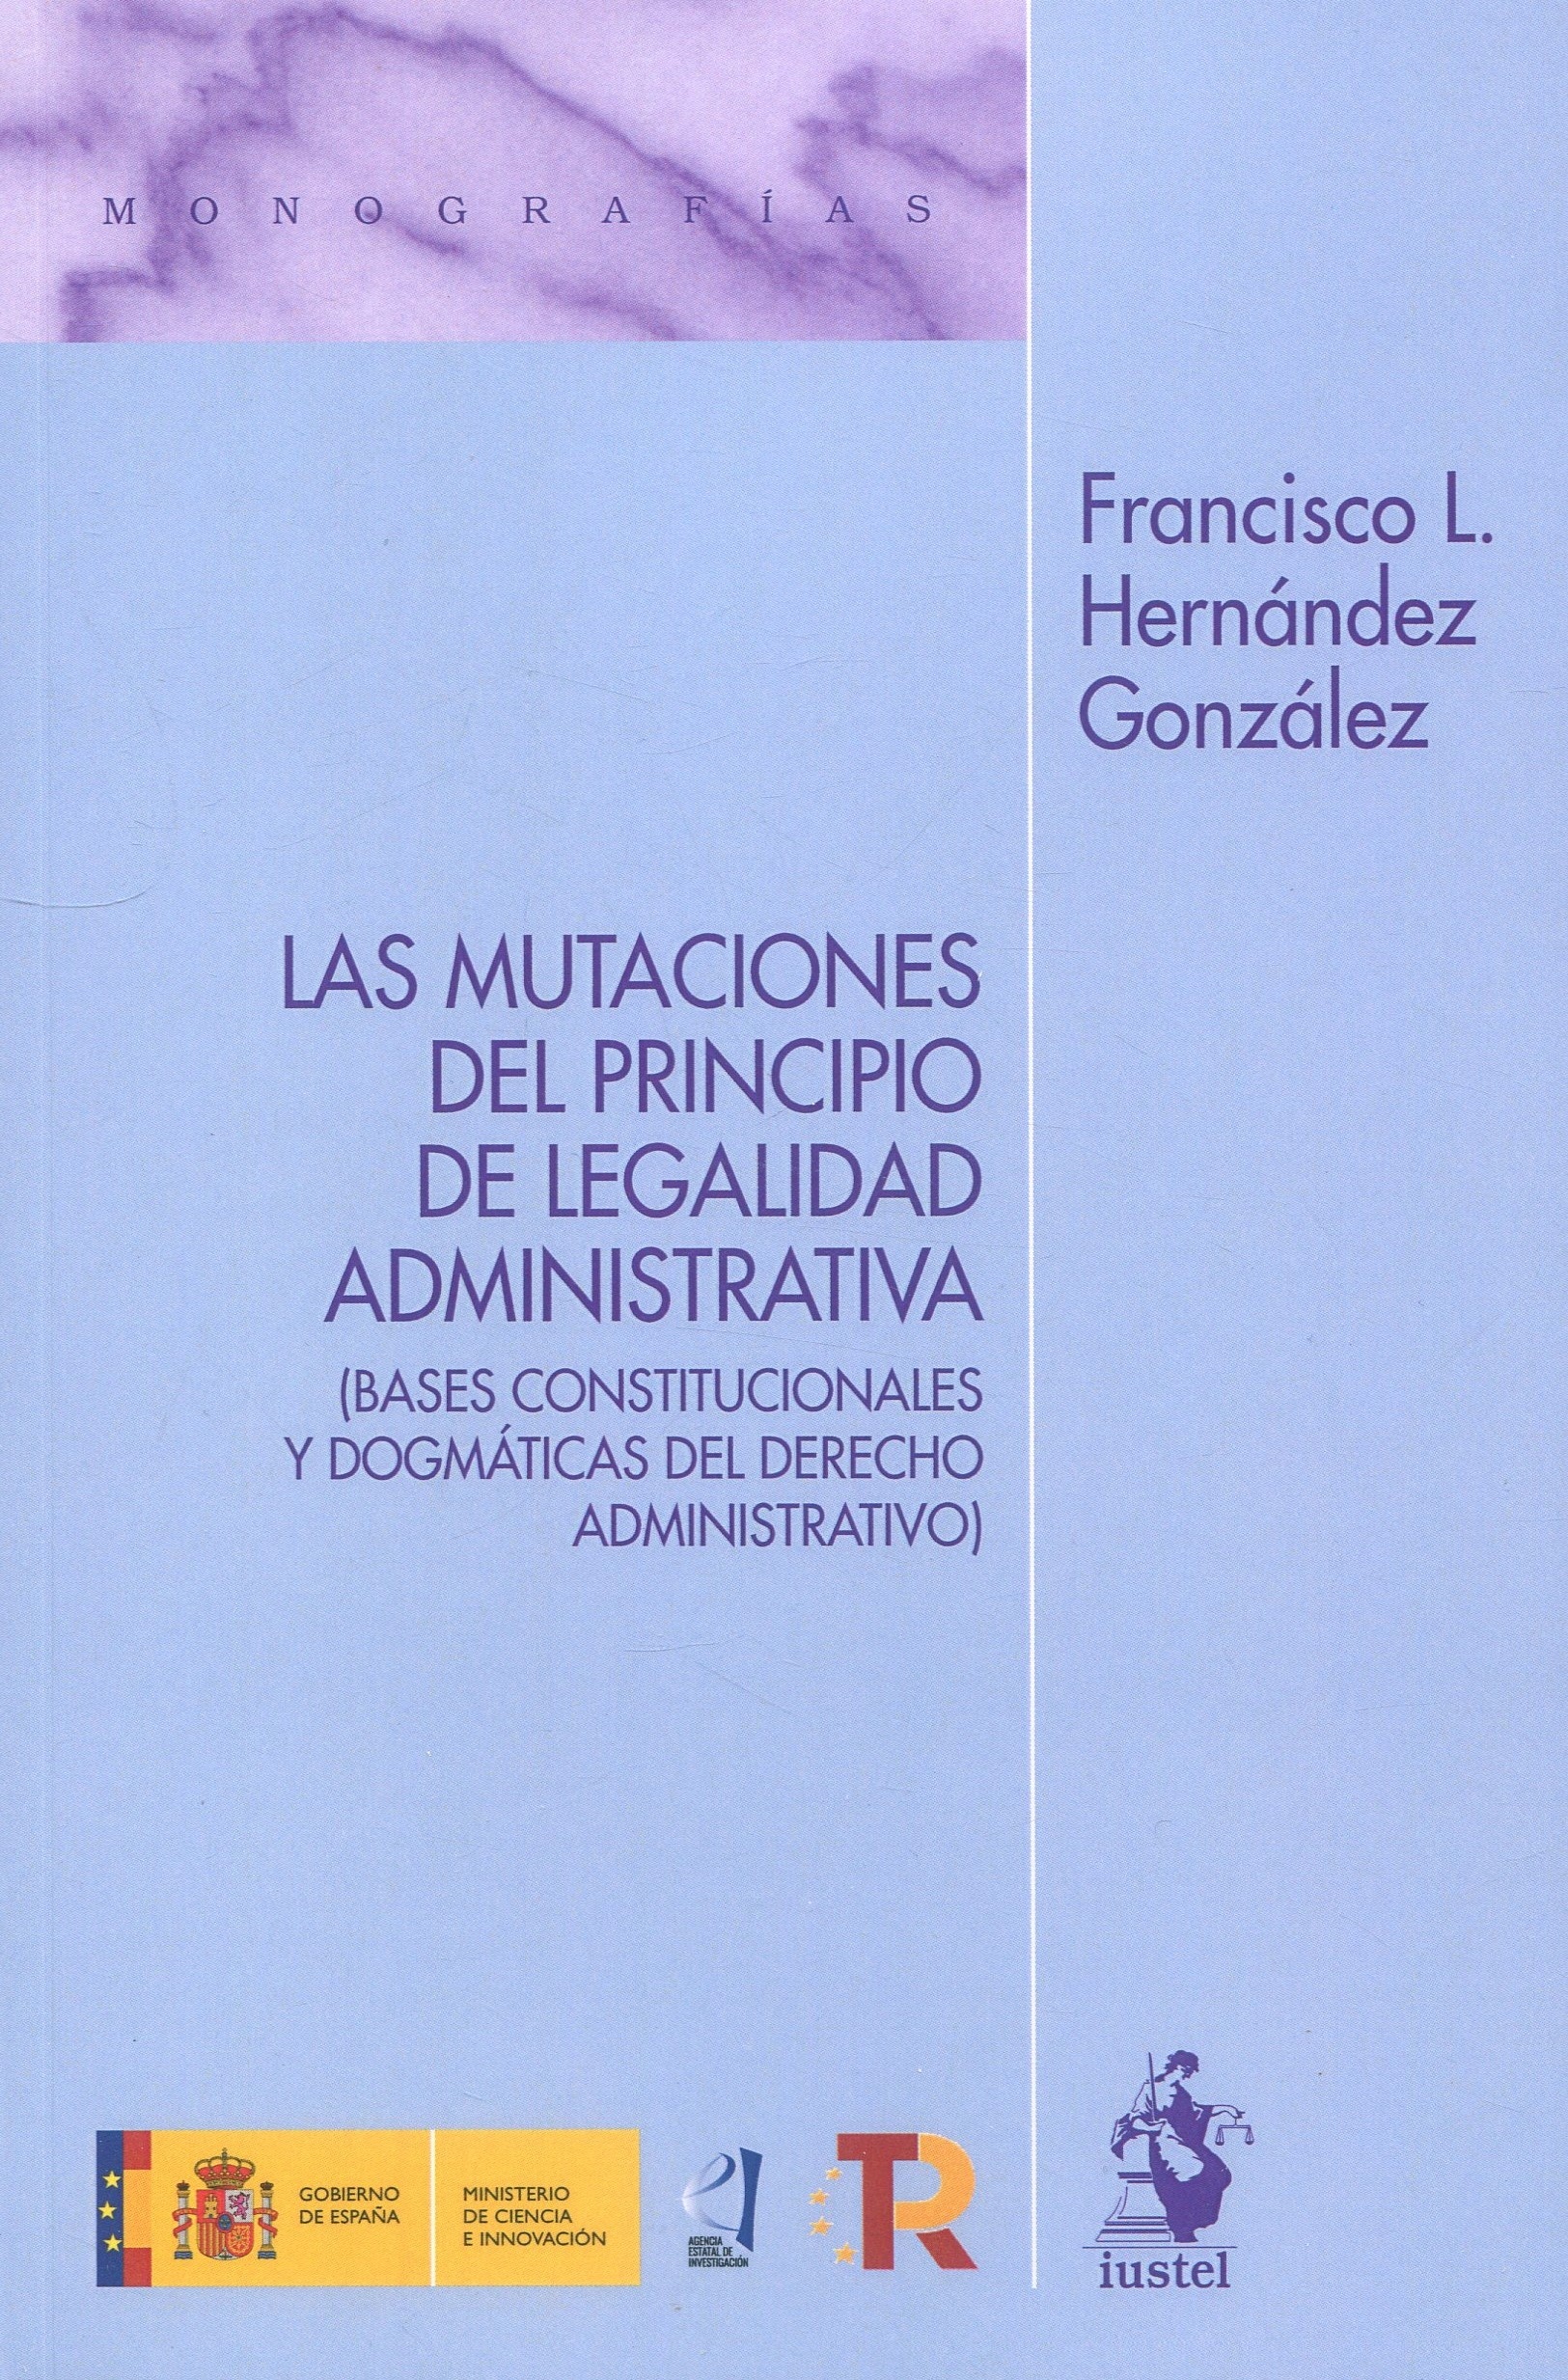 Las Mutaciones del principio de legalidad administrativa "Bases constitucionales y dogmáticas del Derecho Administrativo"